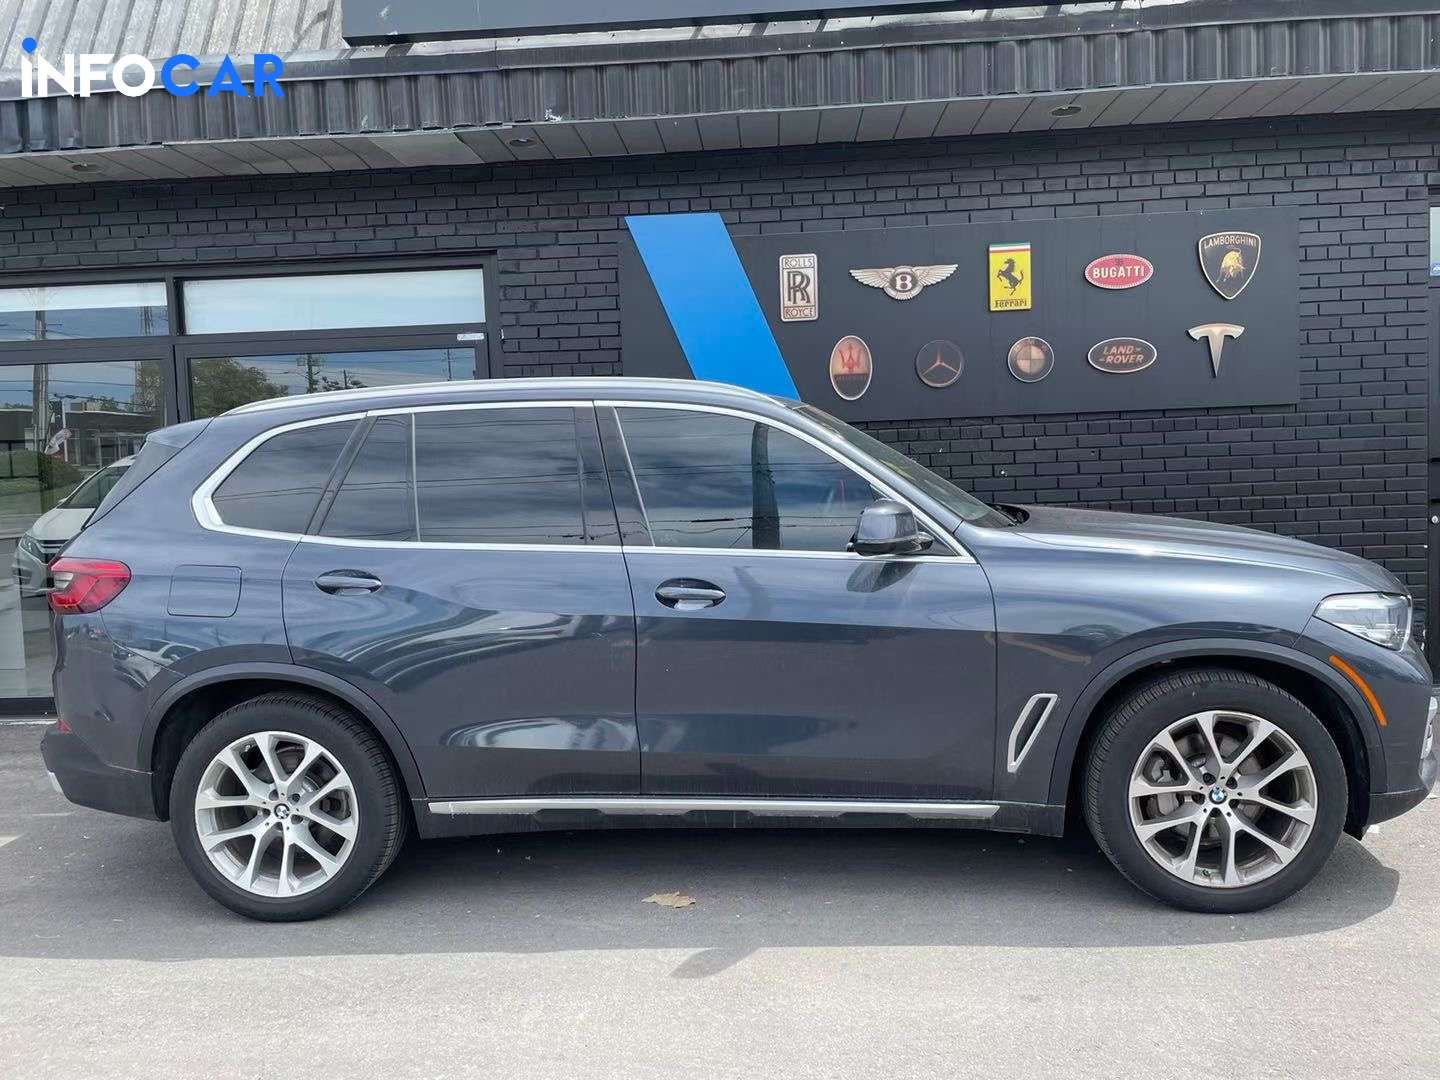 2019 BMW X5 xDrive 40i - INFOCAR - Toronto Auto Trading Platform